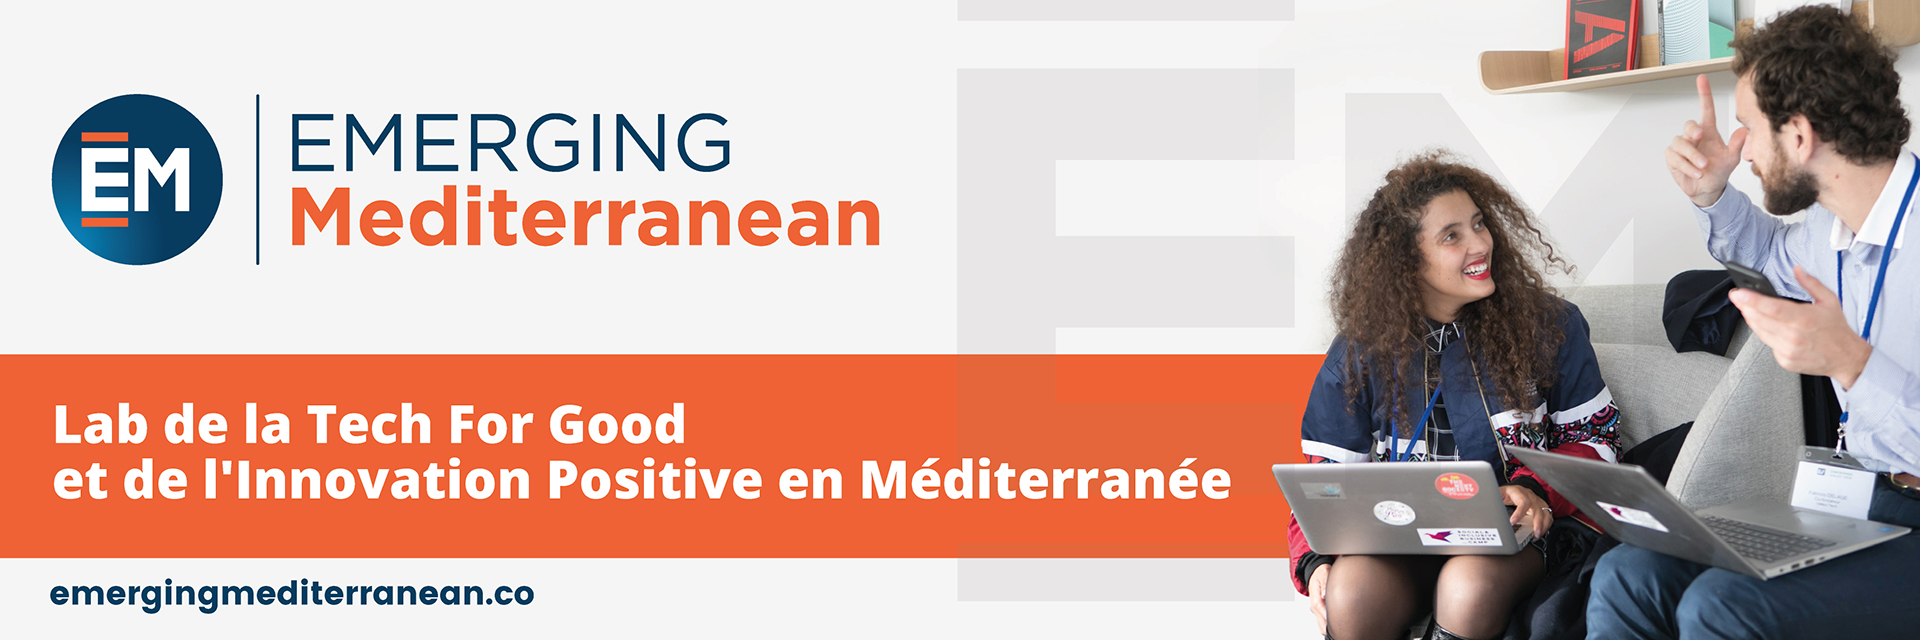 Conférence Digitale EMERGING Mediterranean : le nouveau rdv des acteurs de la Tech For Good en Méditerranée